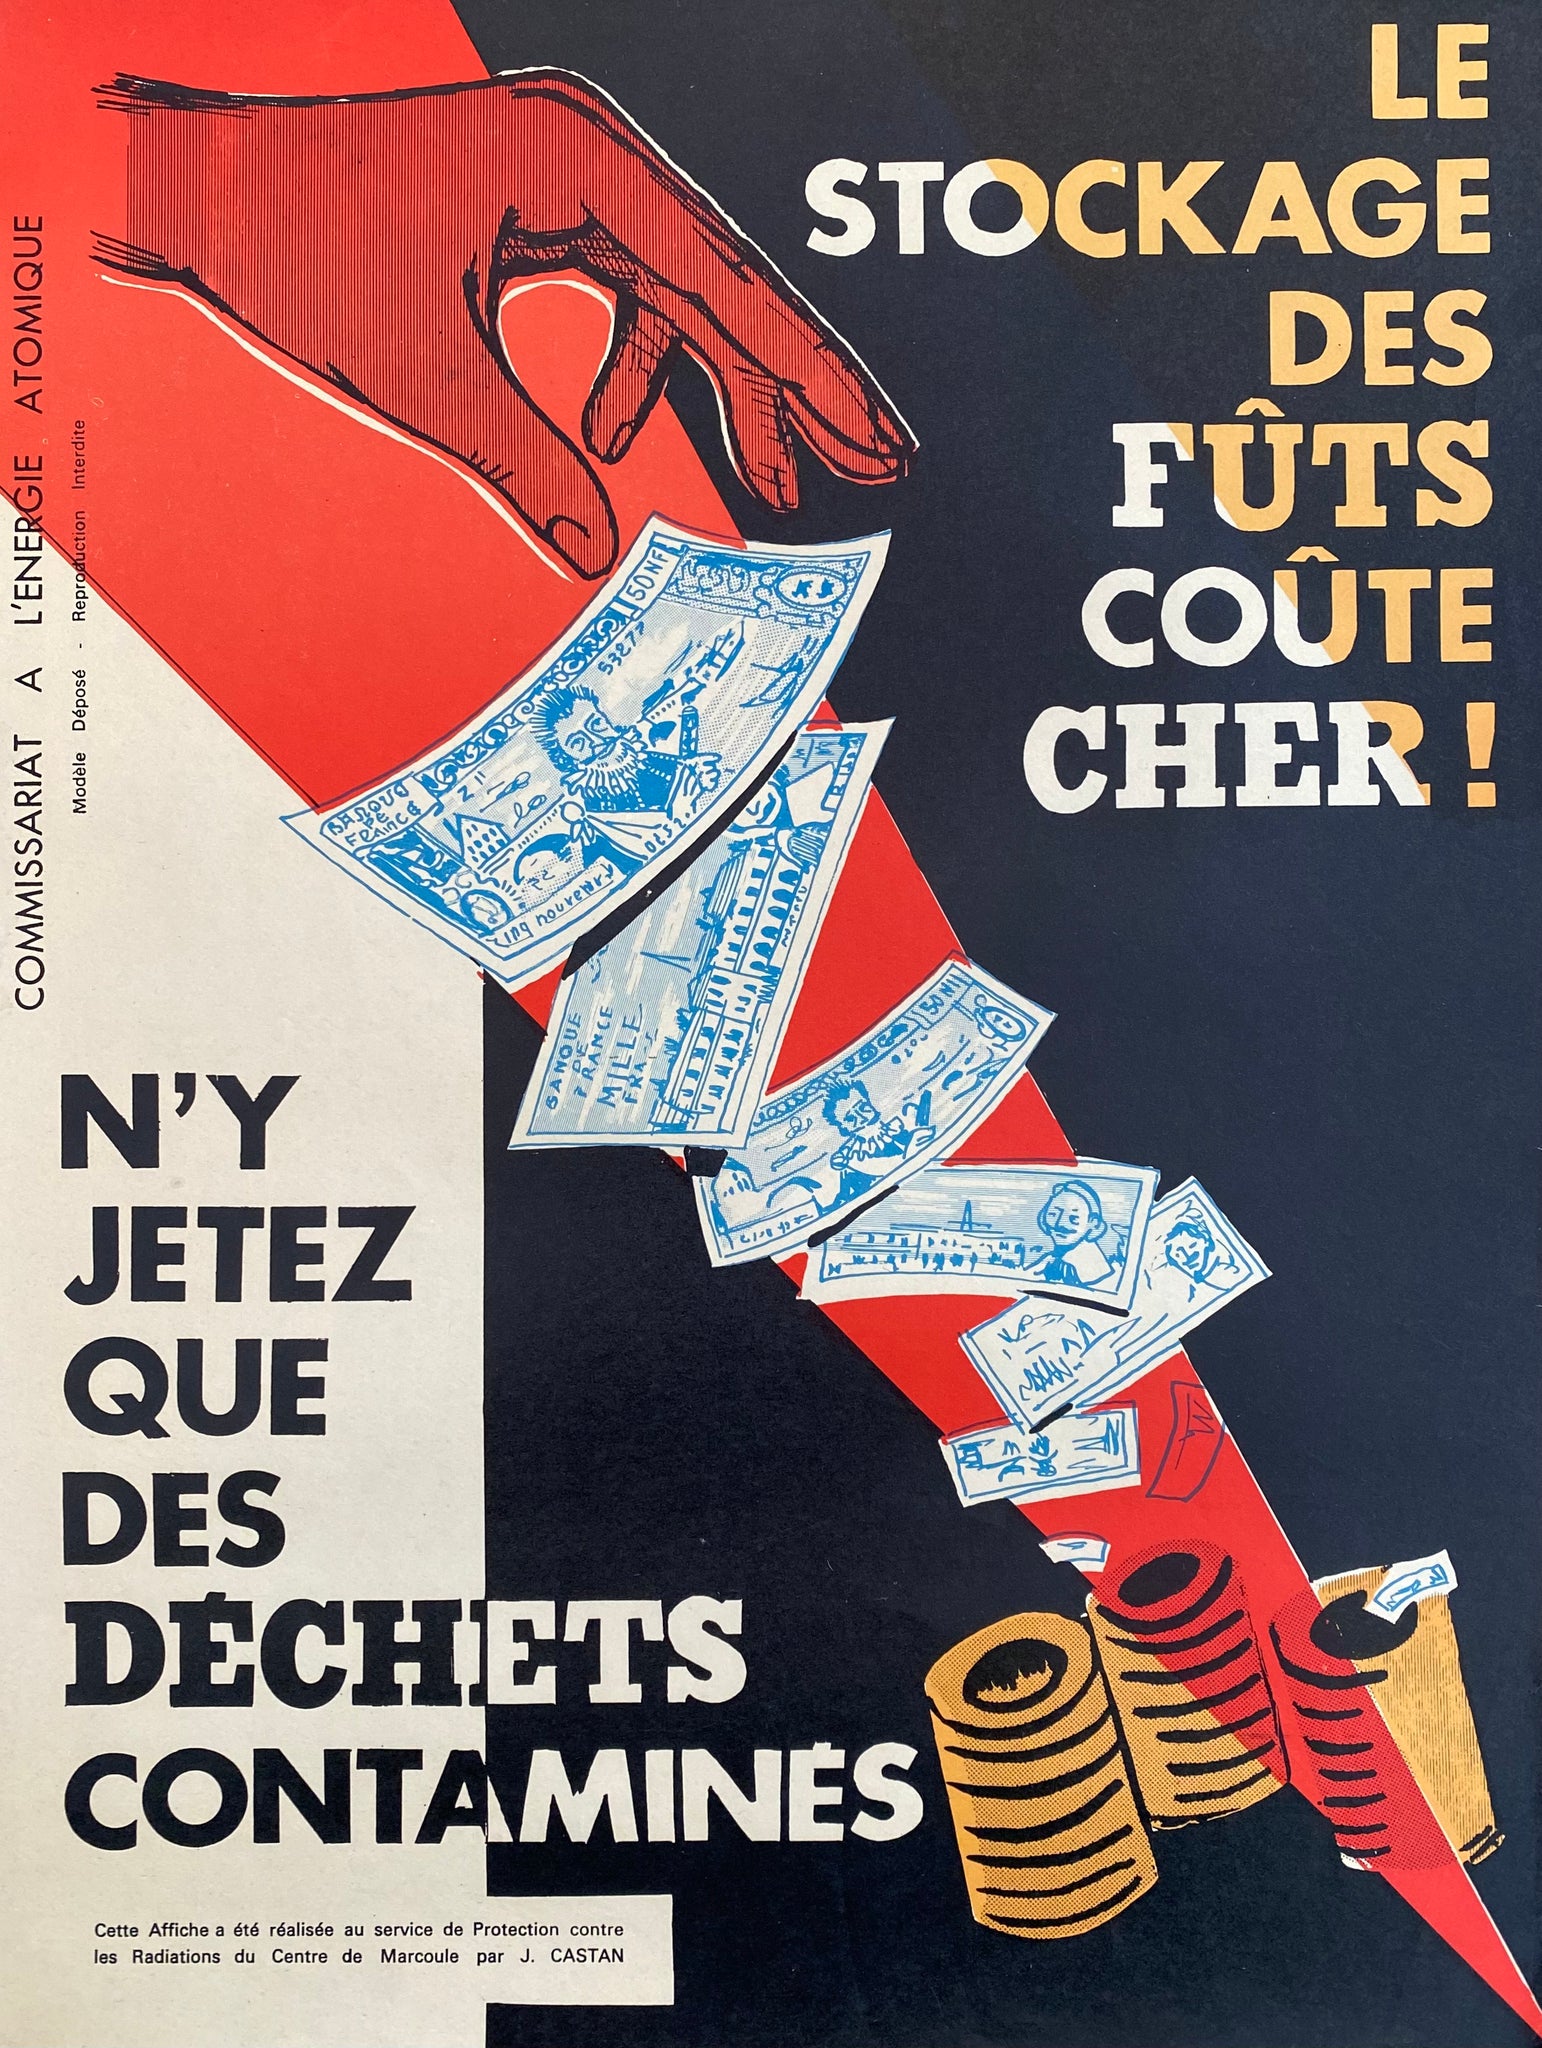 Les affiches de la campagne de l'AIEA en 1964 sur la radioactivité : une source d'information fiable pour se protéger contre les risques de la radiation.